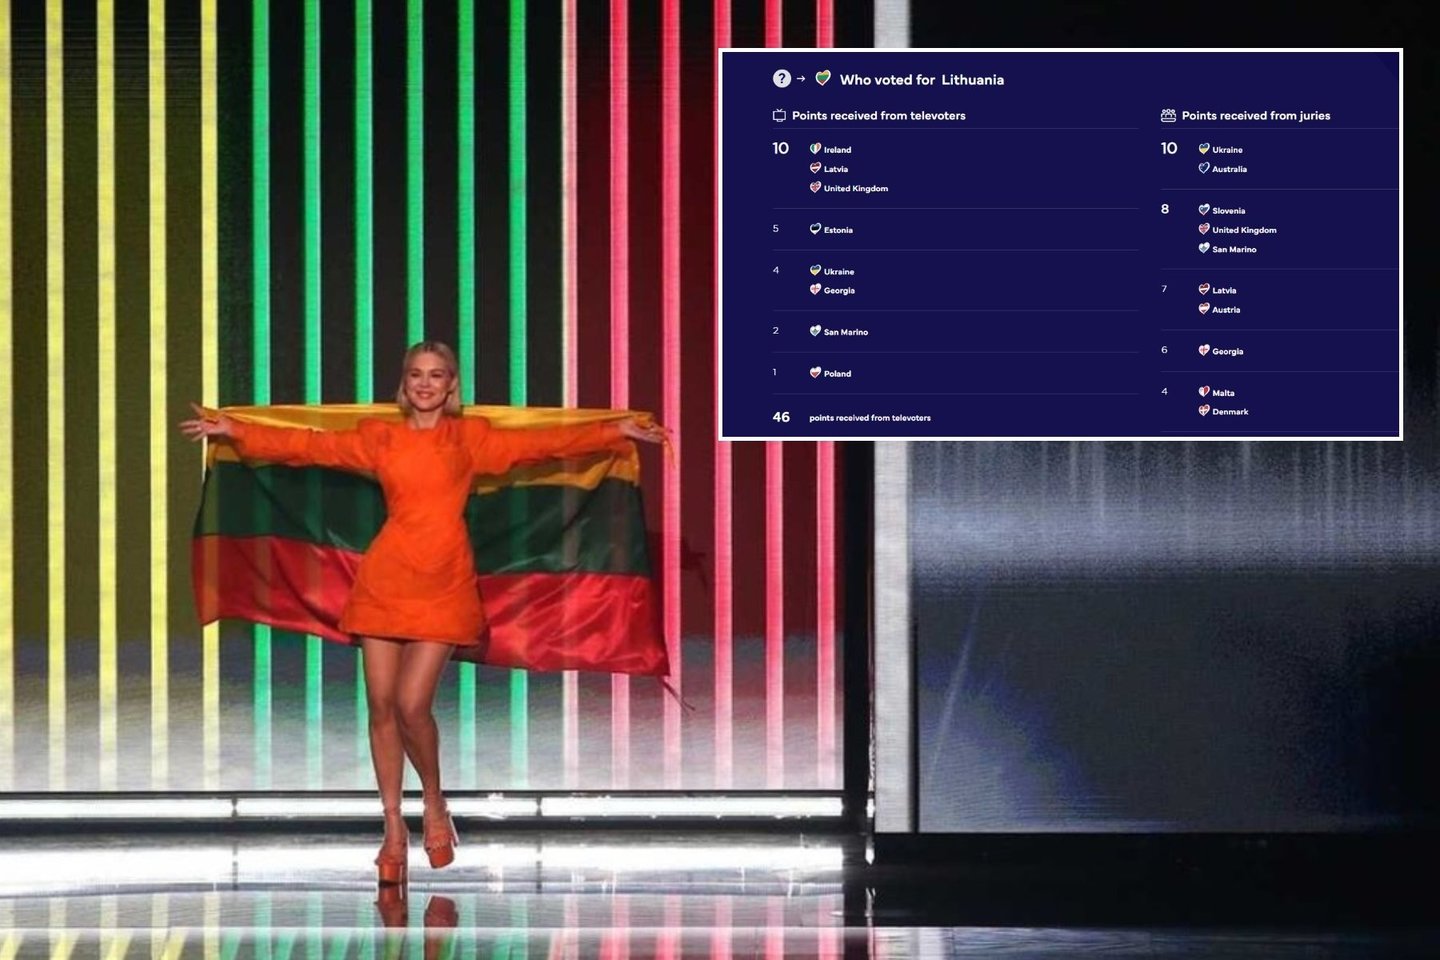 Jau aišku, kas Lietuvai skyrė daugiausia balsų. <br>lrytas.lt koliažas. 